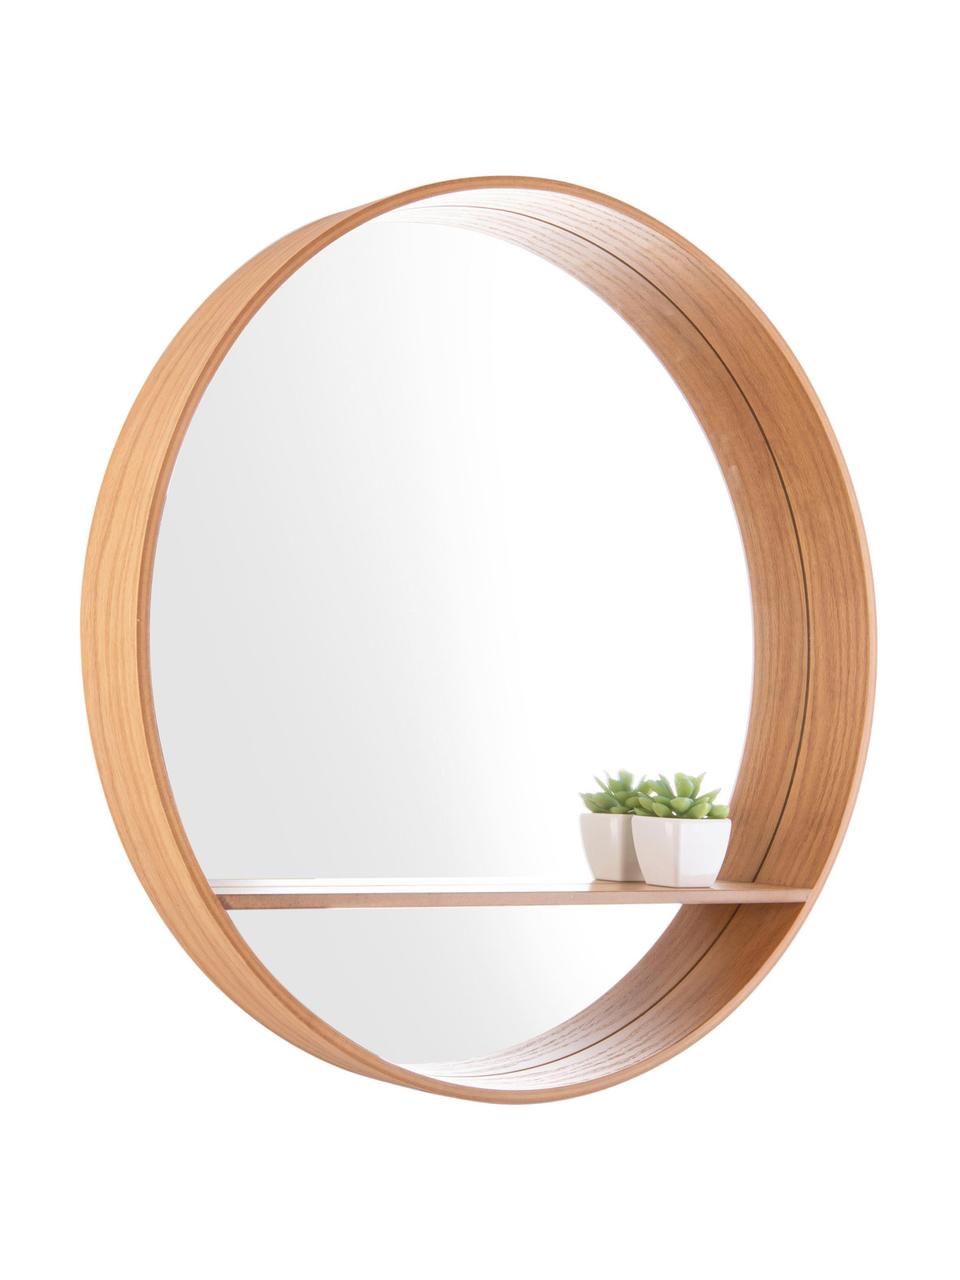 Specchio da parete cornice in legno e mensola Sheer, Superficie dello specchio: lastra di vetro, Marrone, Ø 61 cm x Prof. 8 cm